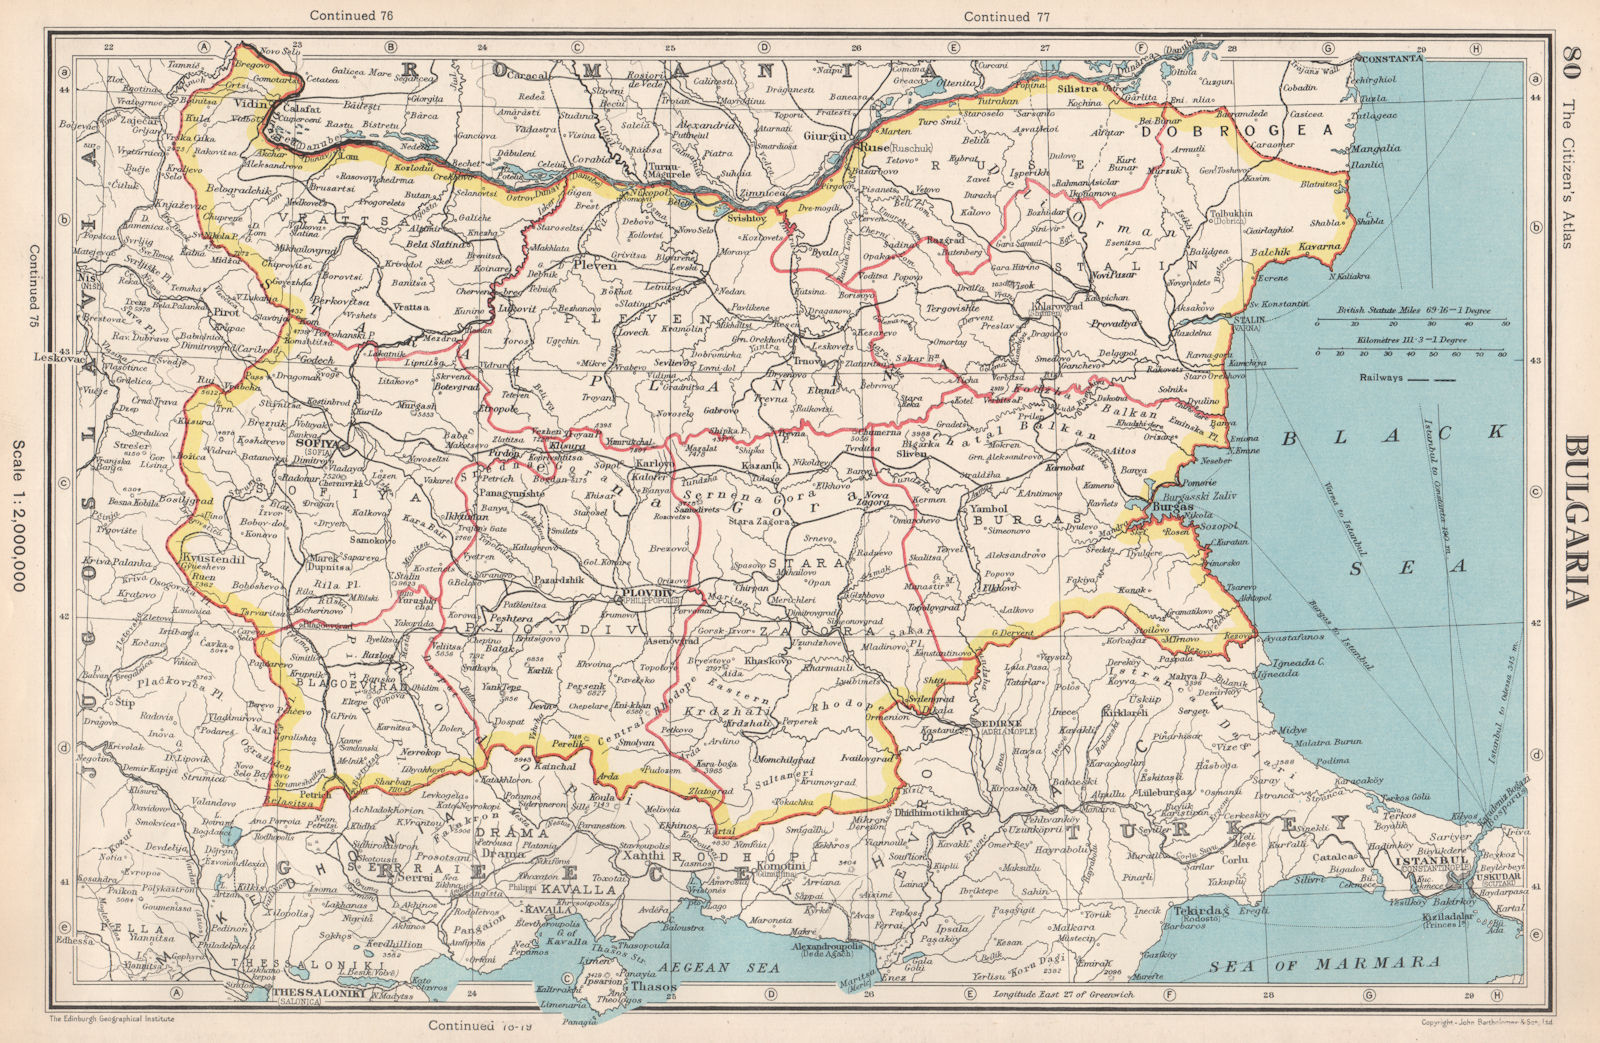 BULGARIA. Showing okrugs/okrags. BARTHOLOMEW 1952 old vintage map plan chart